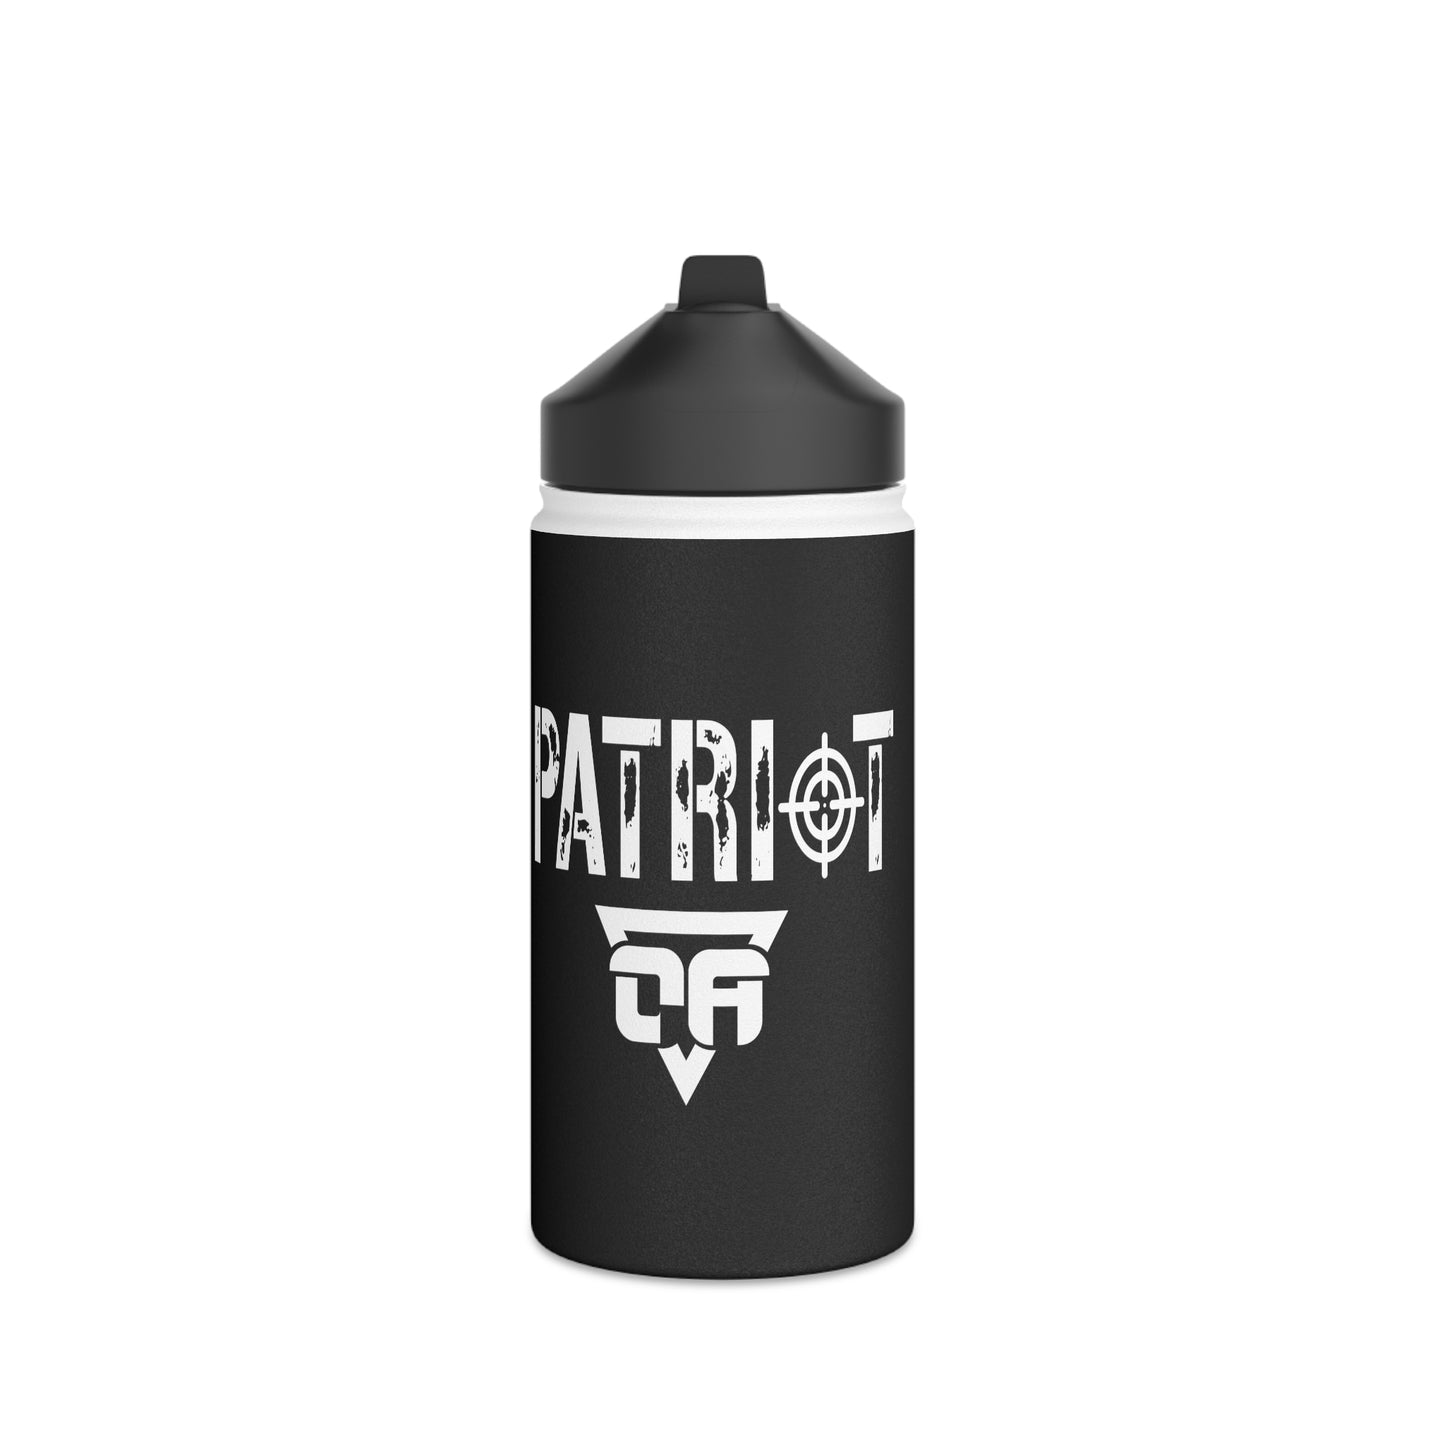 Patriot Steel Water Bottle, Standard Lid